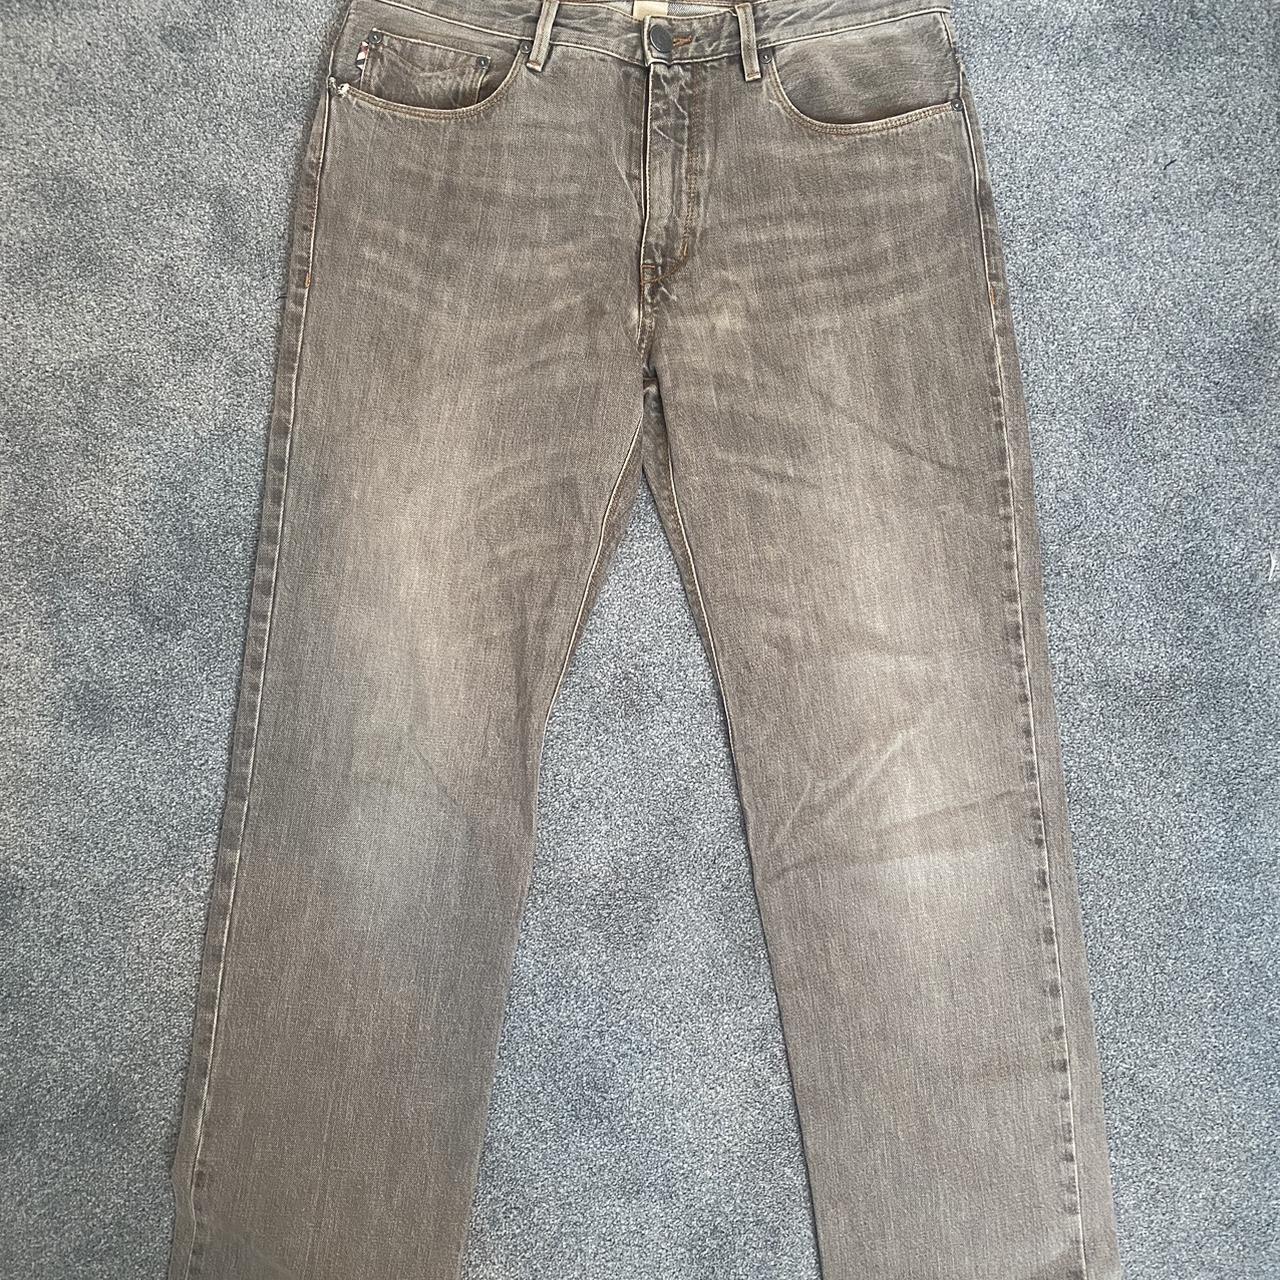 Vintage Burberry grey/brown Jeans in great... - Depop